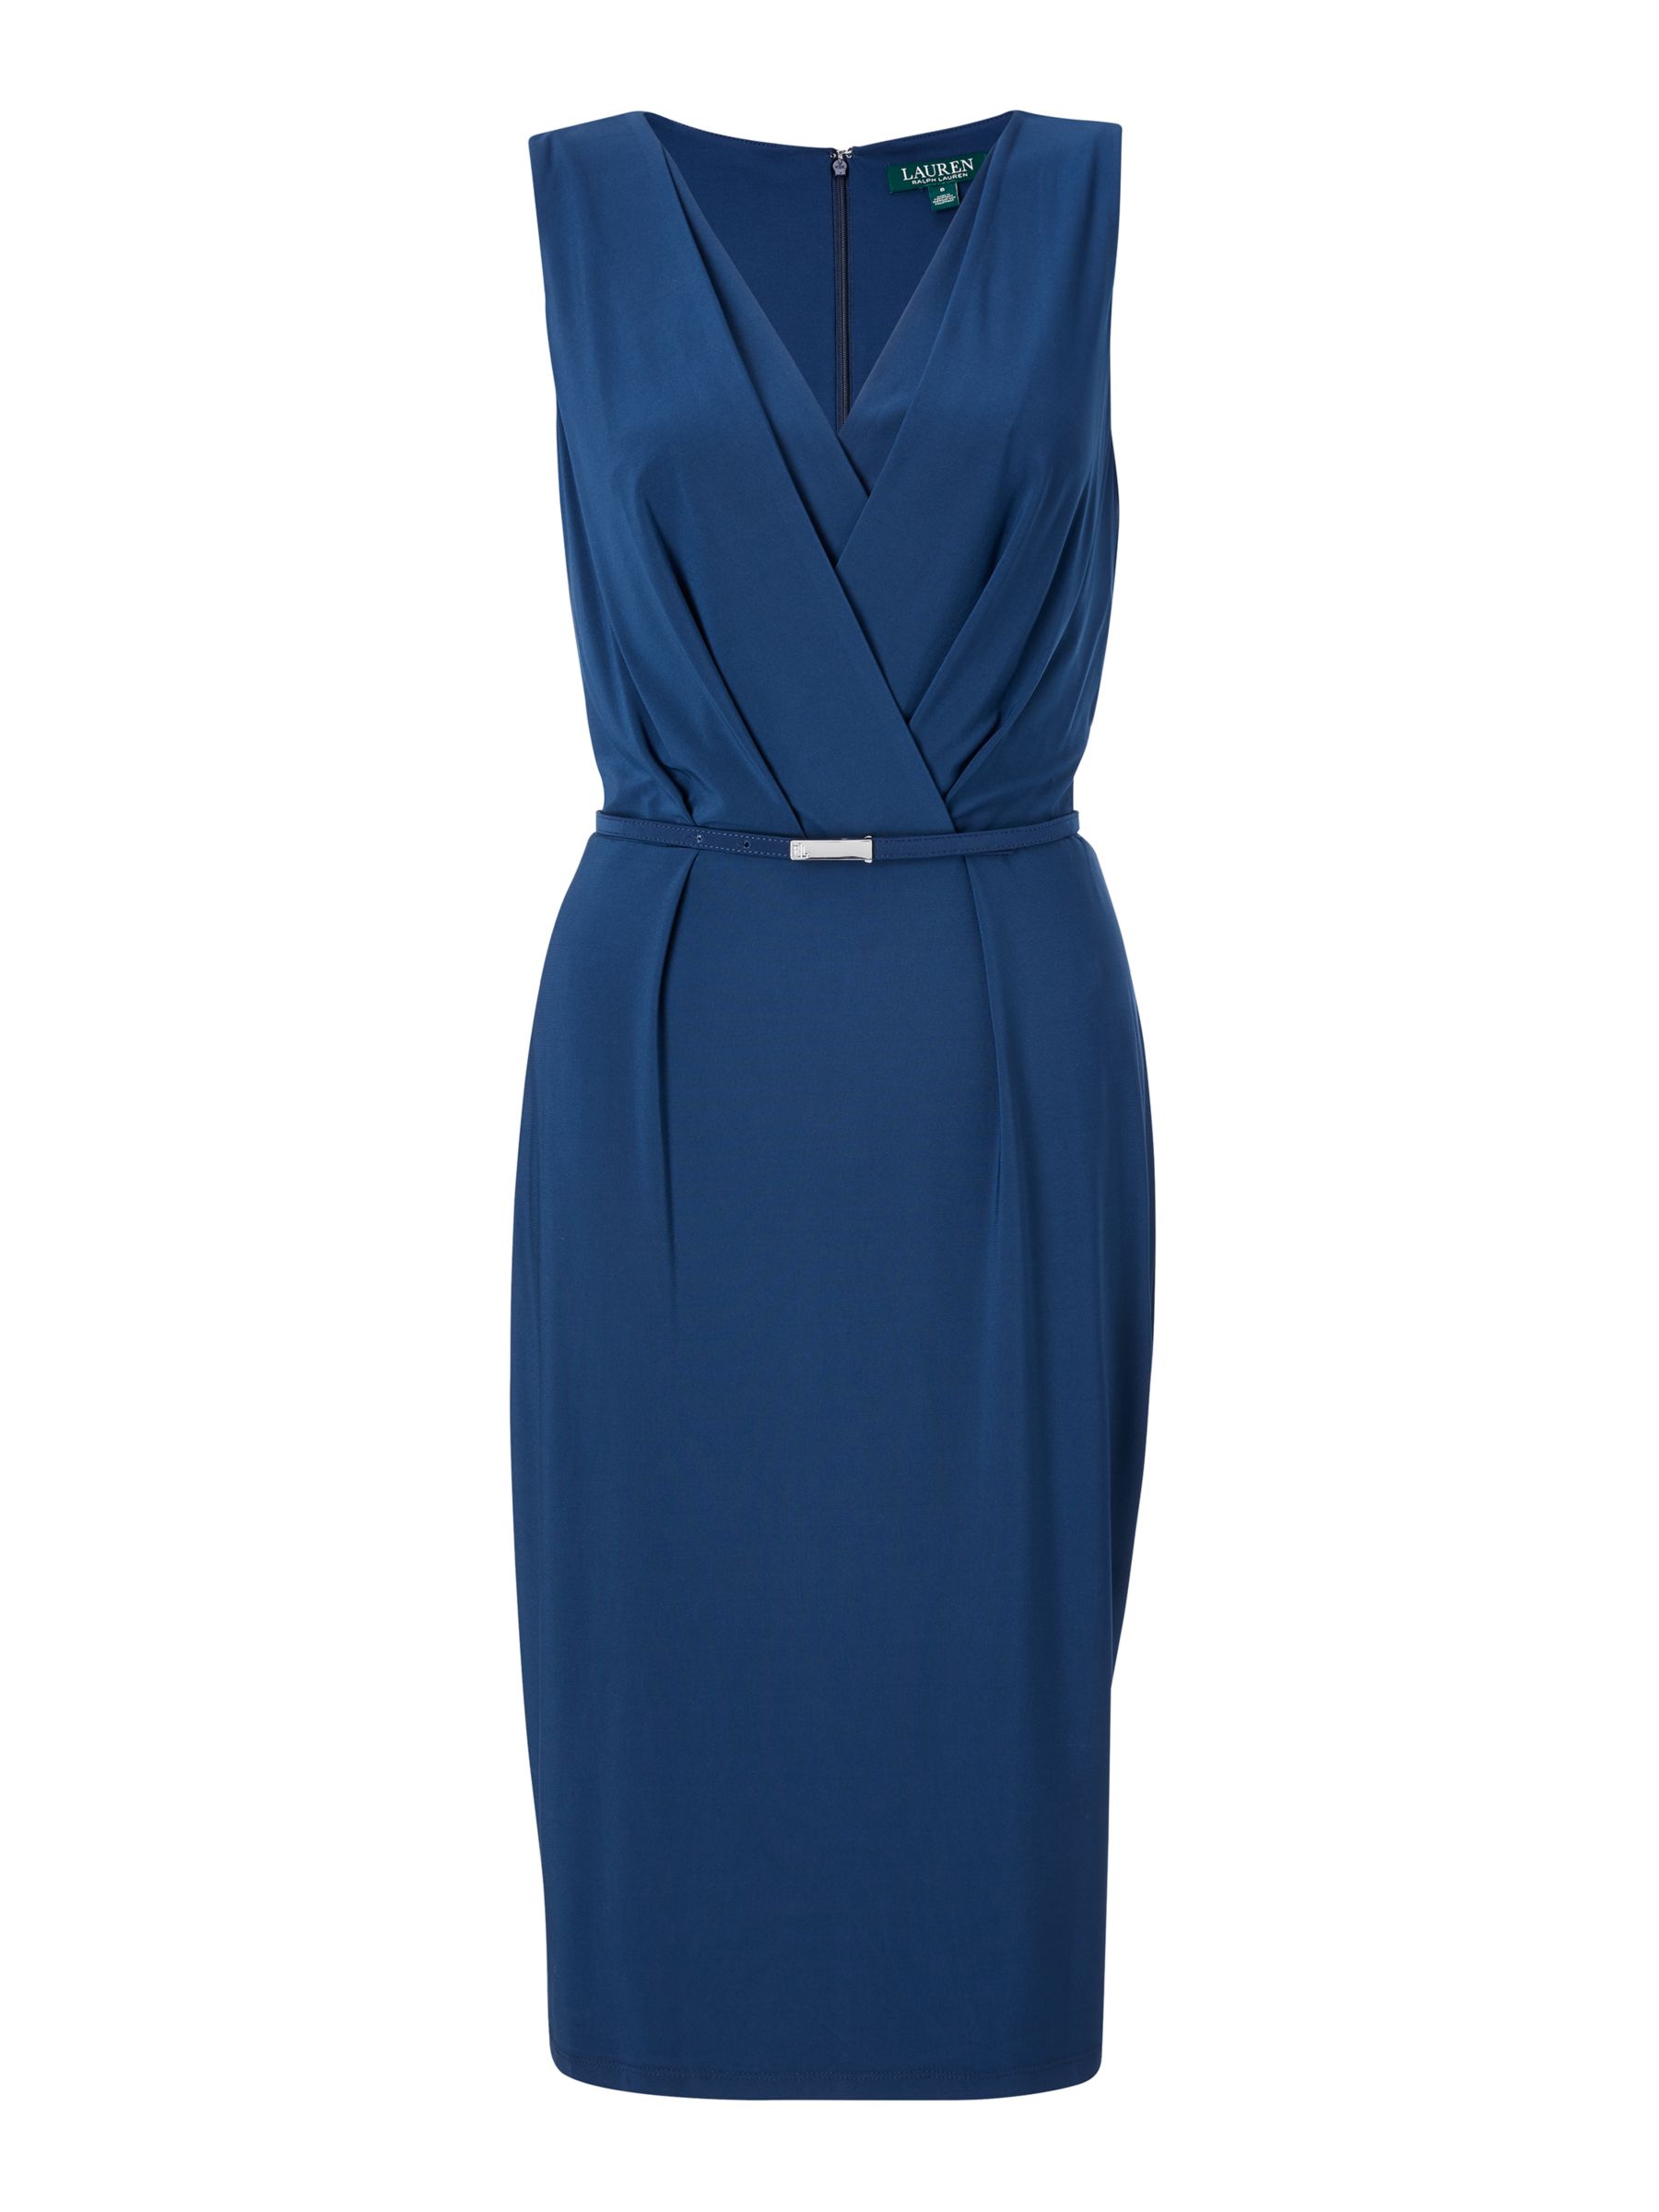 Lauren Ralph Lauren Lazia Belted Dress, Luxe Blue